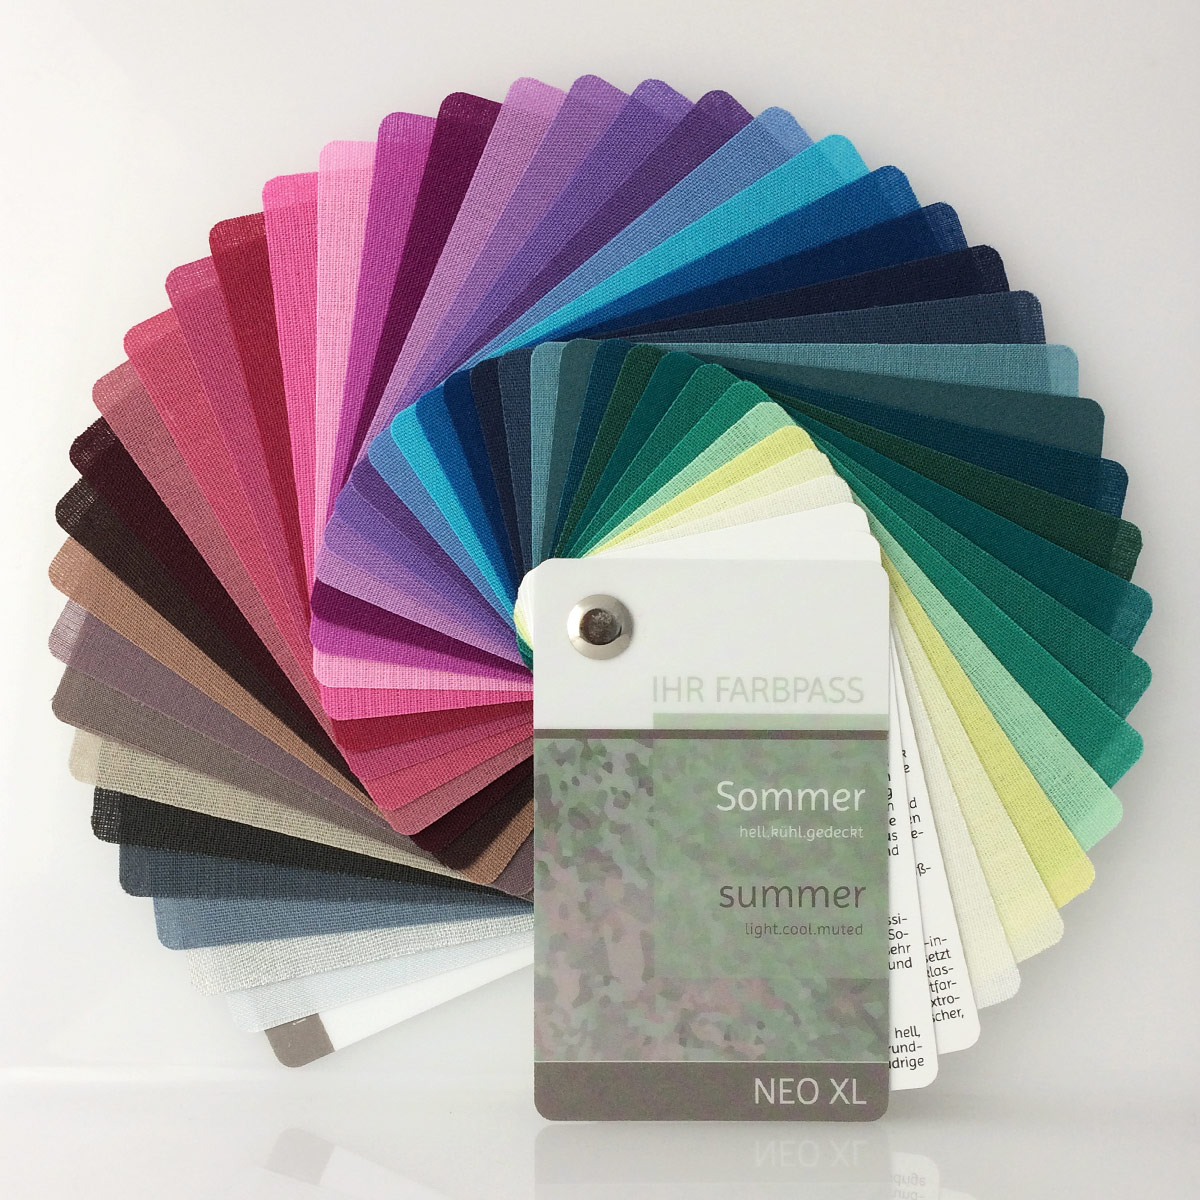 Farbpass Sommertyp zur Farbberatung, Vorderseite - Neo XL | Komood